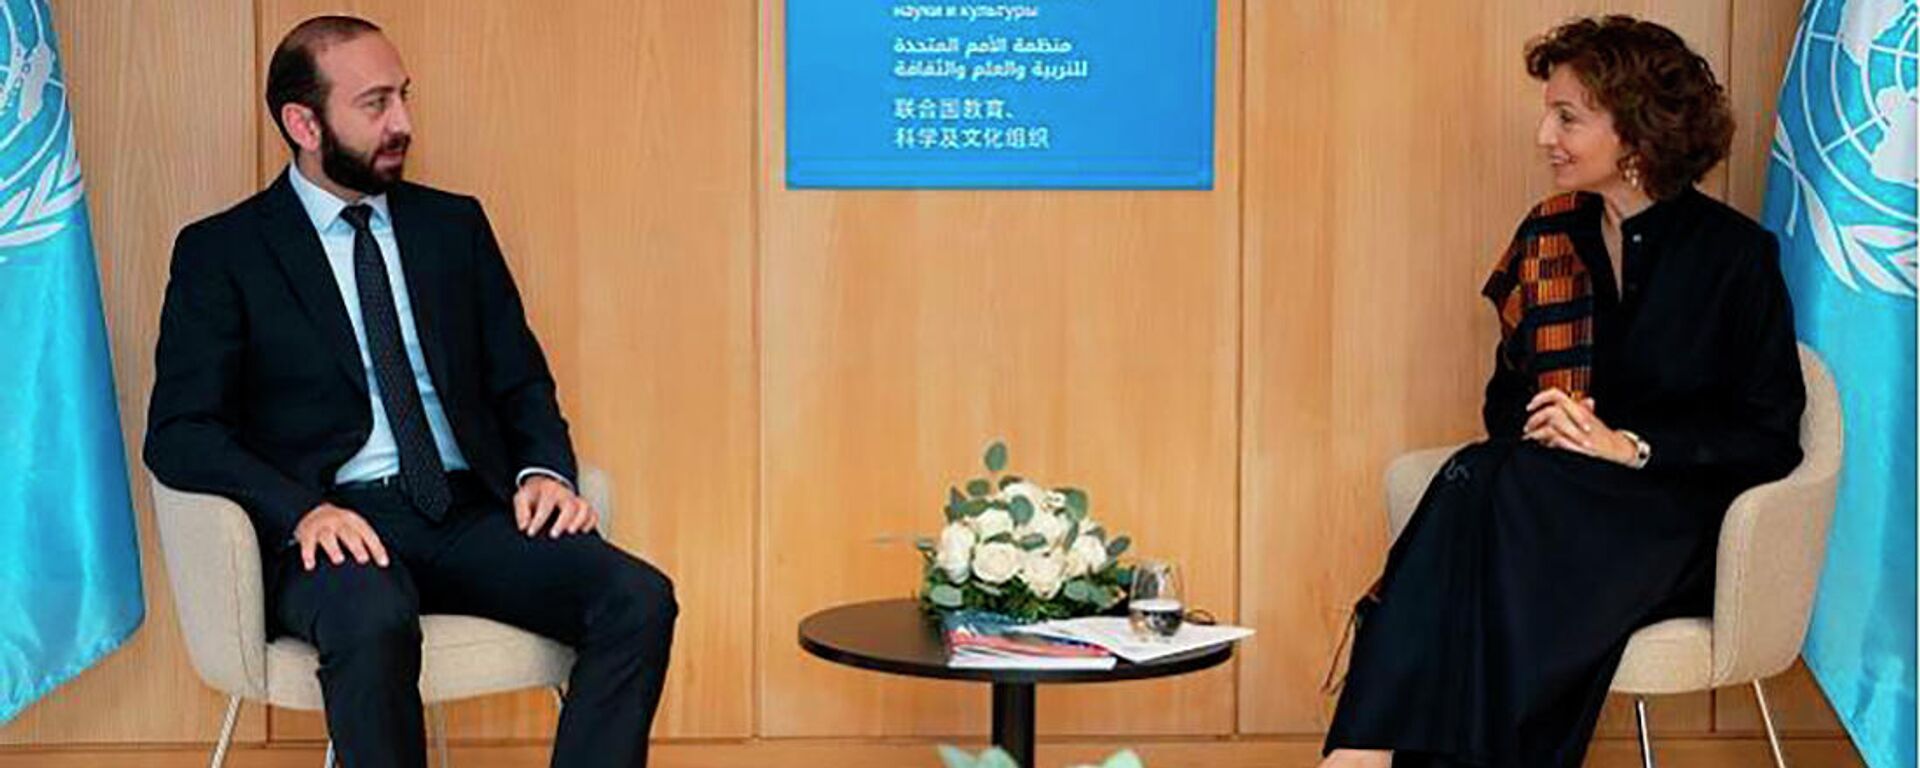 Министр иностранных дел Арарат Мирзоян встретился в Париже с генеральным директором ЮНЕСКО Одри Азуле (11 ноября 2021). Париж  - Sputnik Армения, 1920, 12.11.2021